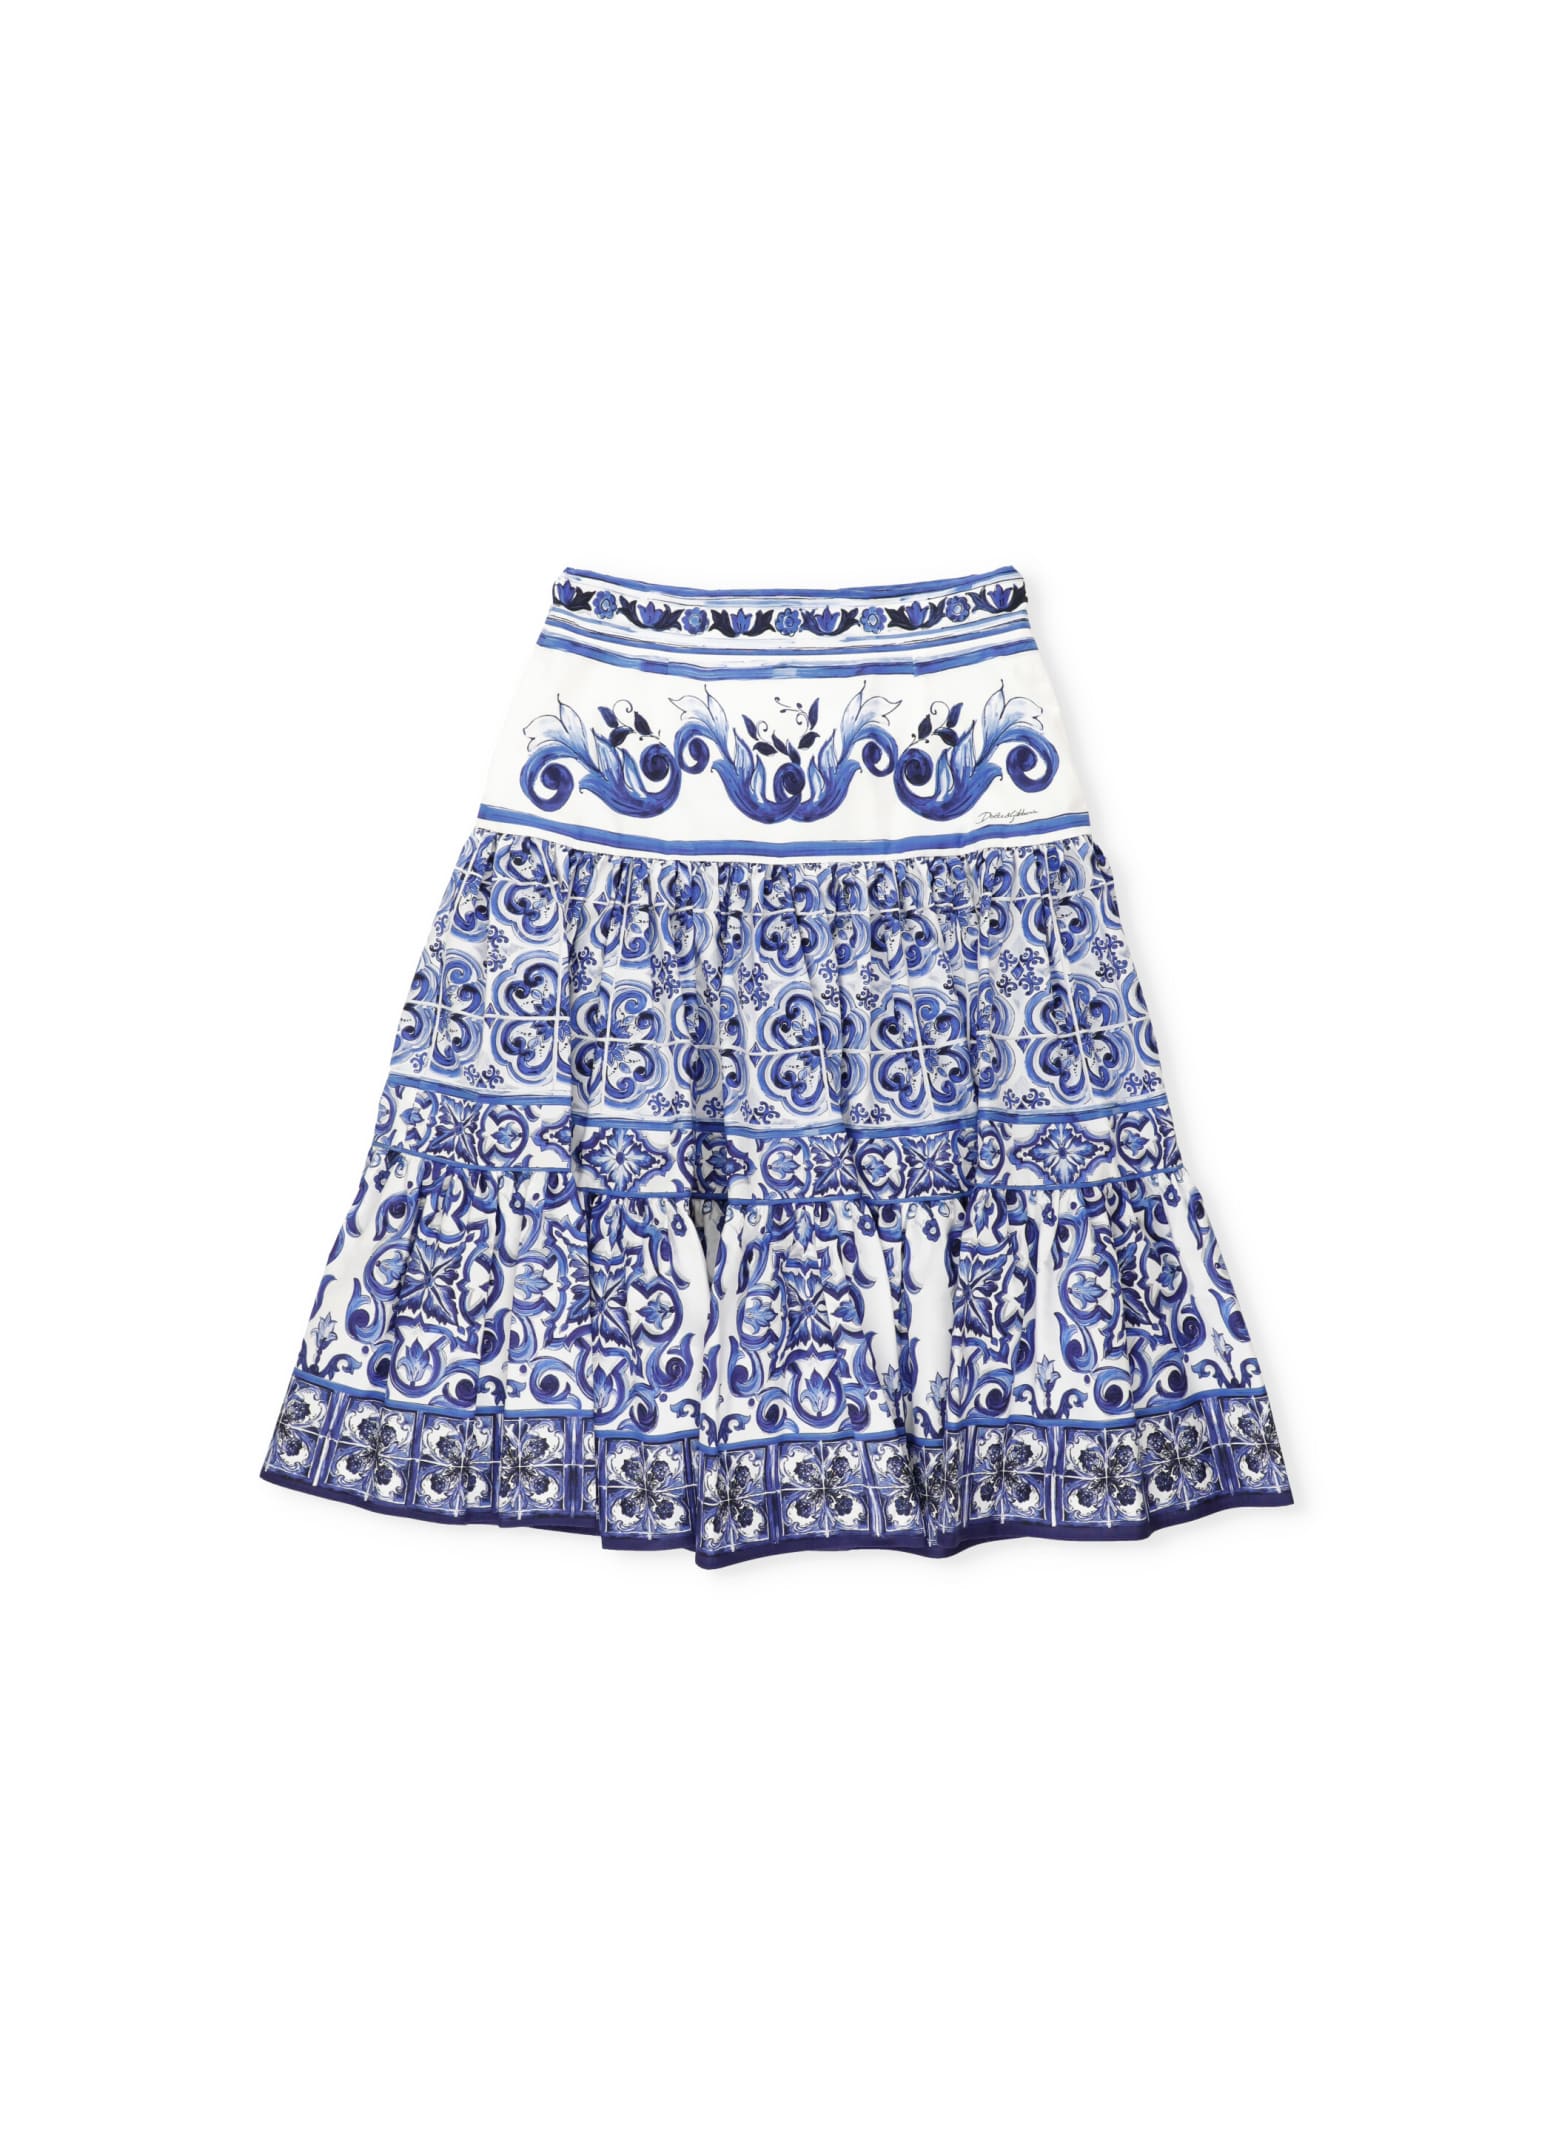 Dolce & Gabbana Majolica Skirt